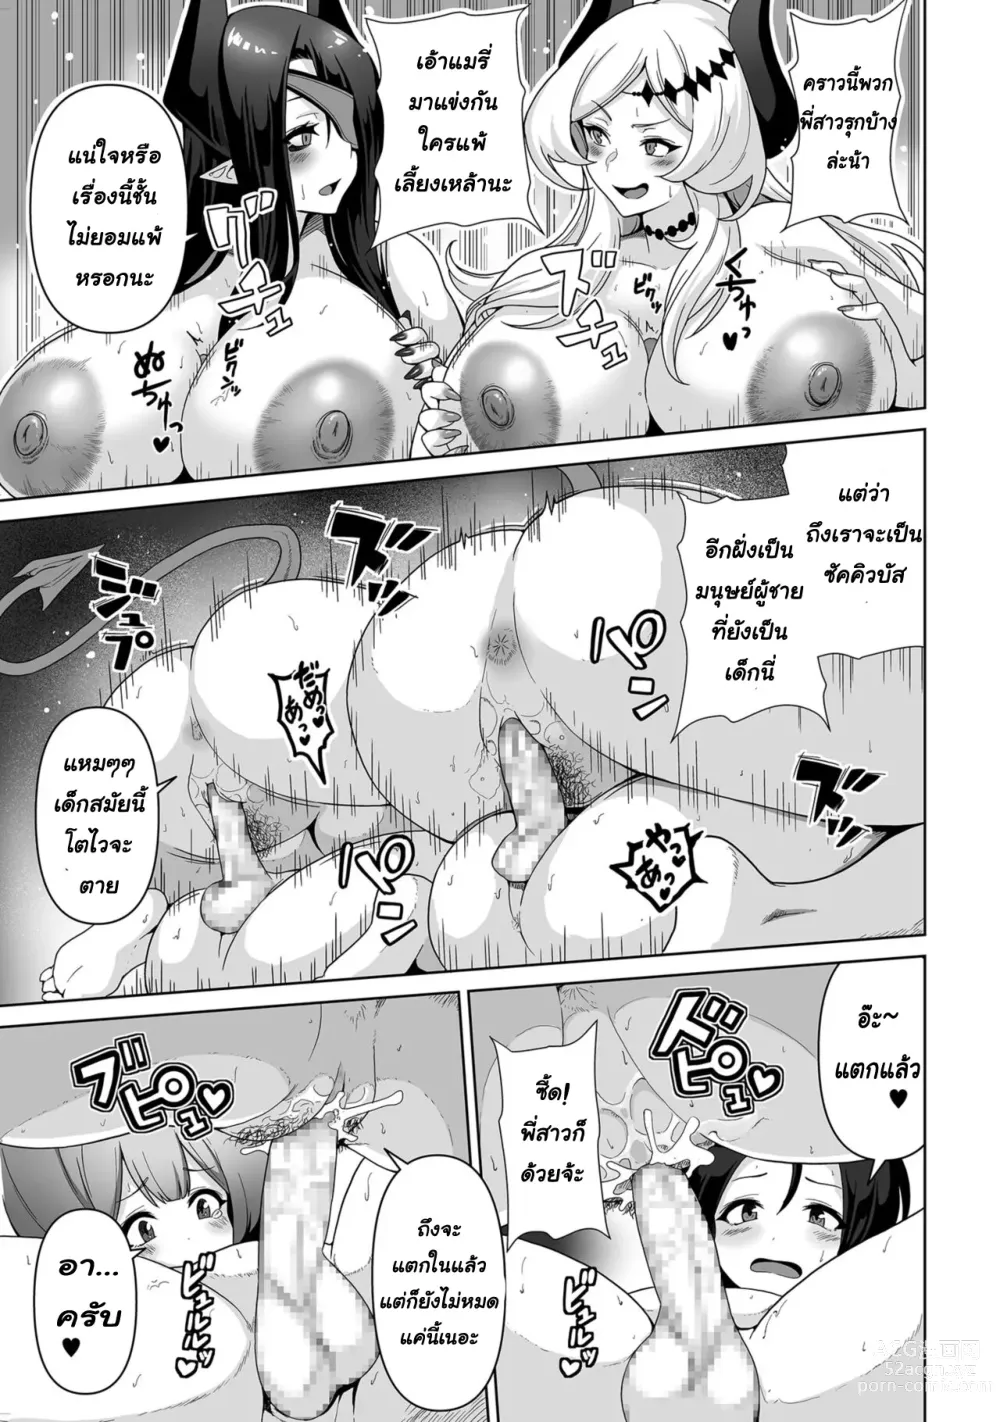 Page 20 of manga Sakyubasu kingudamu dai isekai kara kita shounen 2